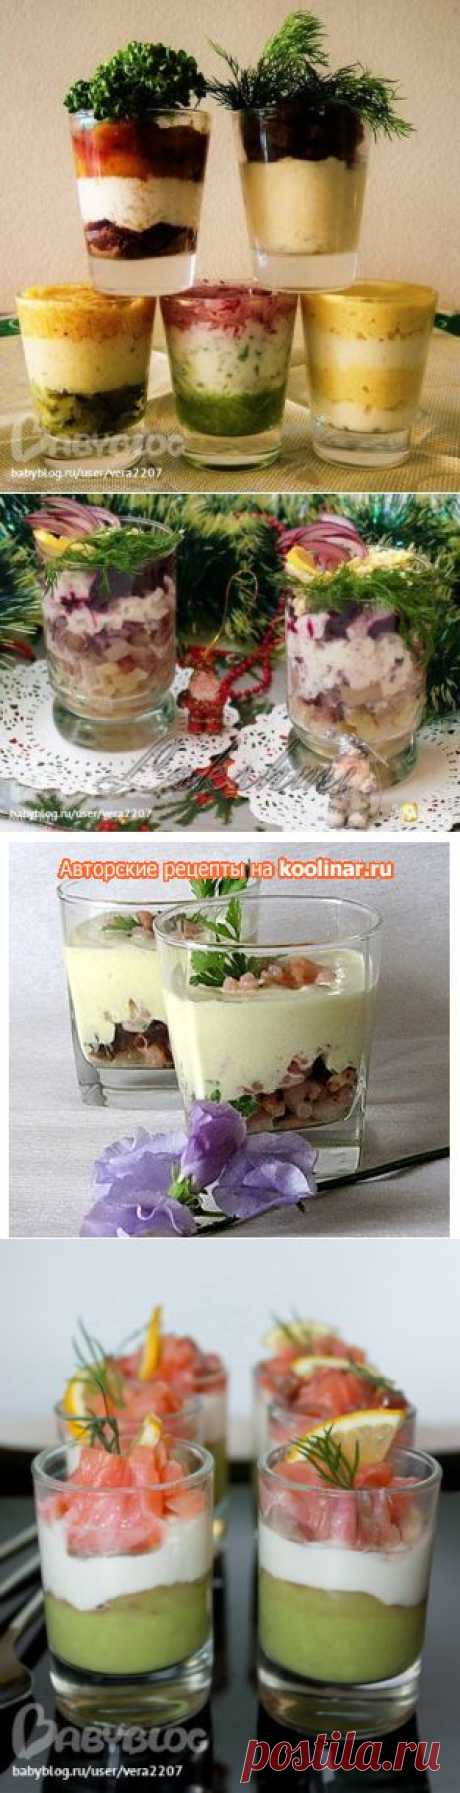 Веррин - салат в стакане (24 примера с фото и ссылками)